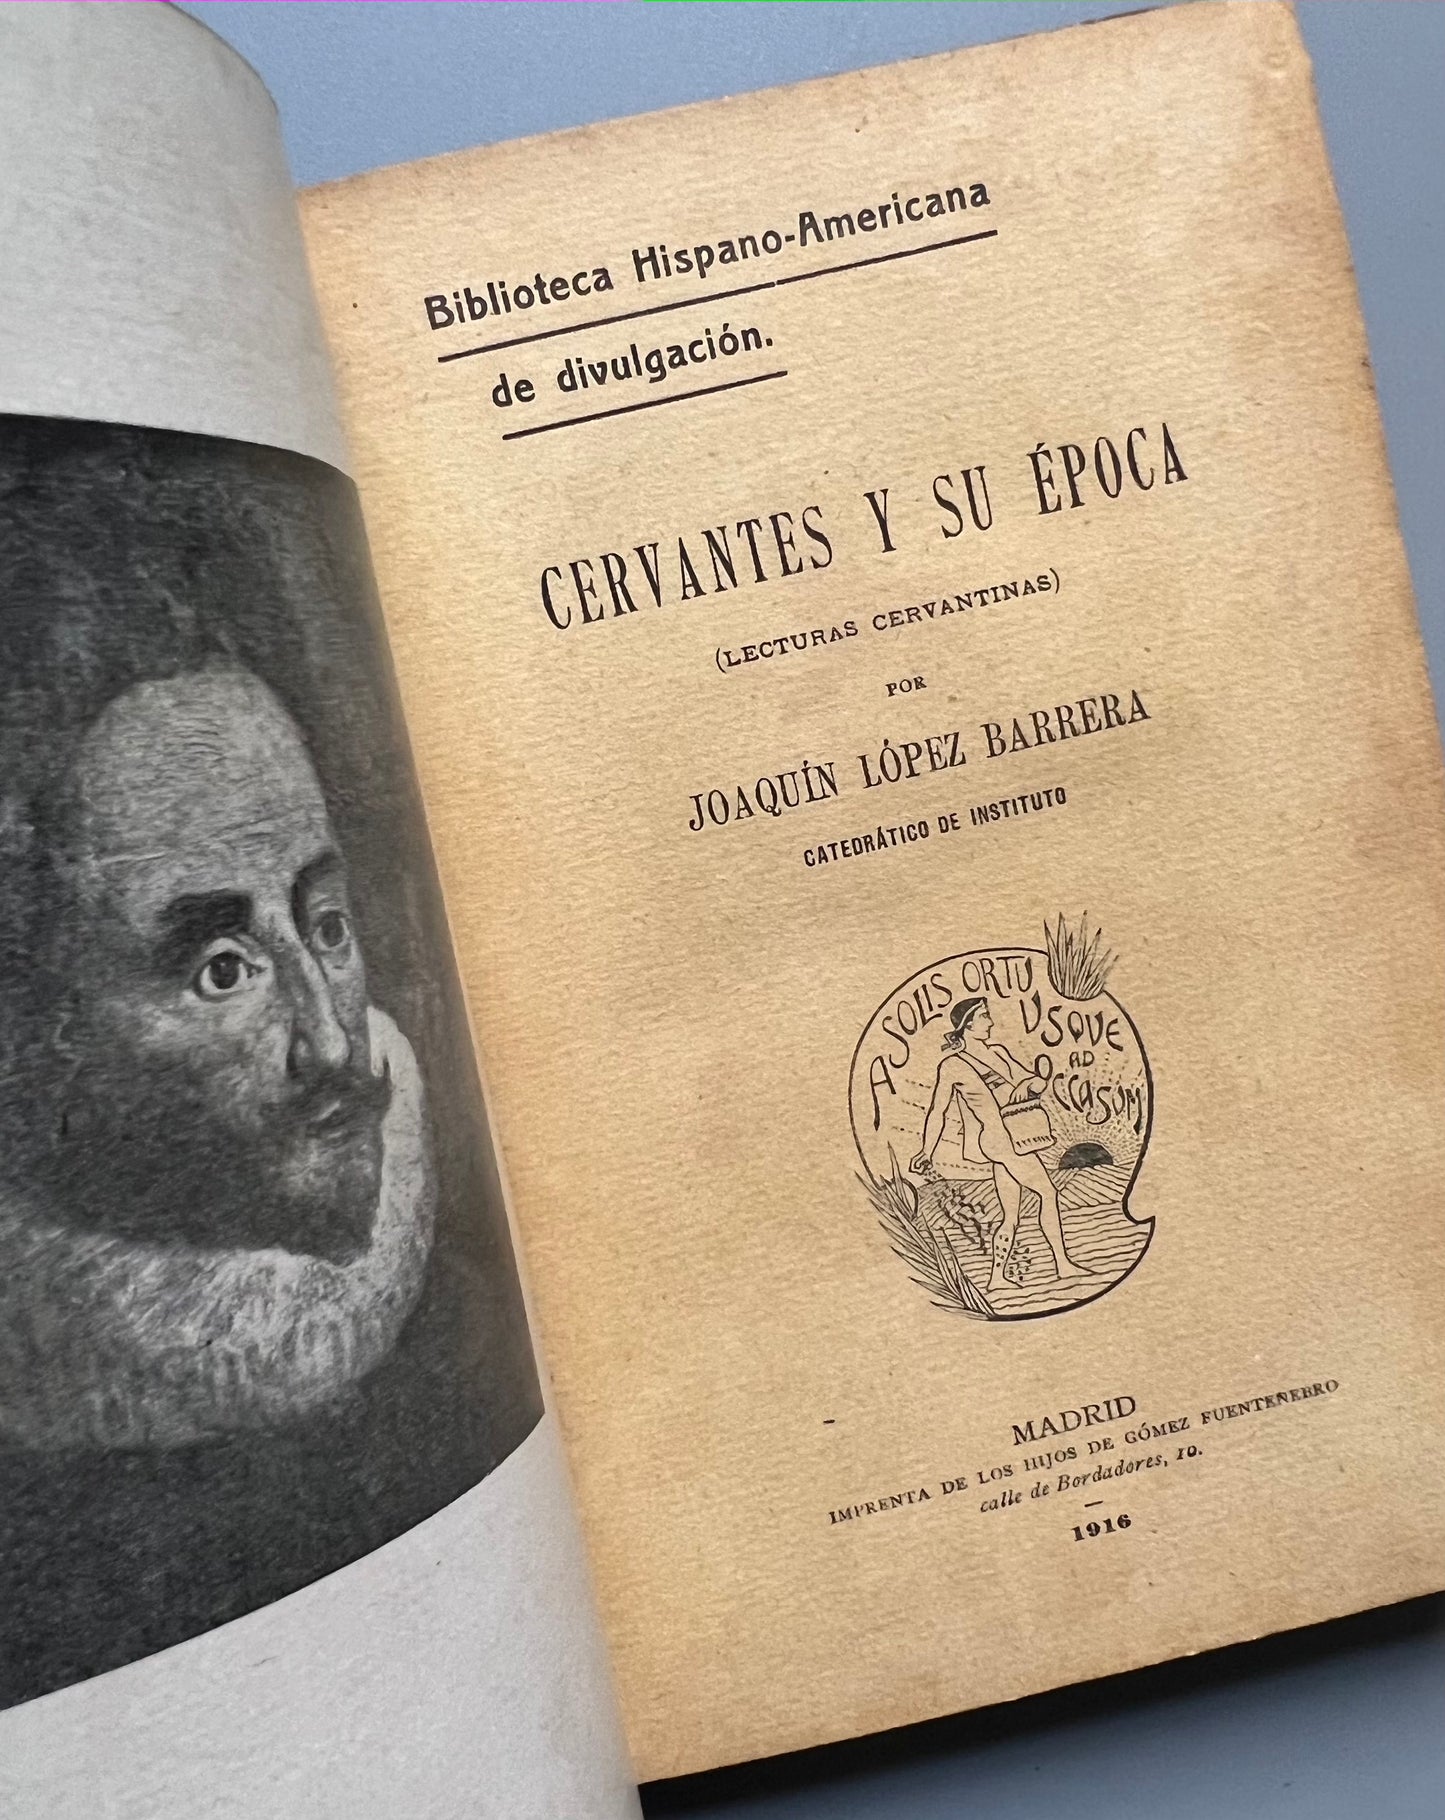 Cervantes y su época (lecturas cervantinas) 1616-1916, Joaquín López Barrera - Biblioteca Hispano-Americana de divulgación, 1916